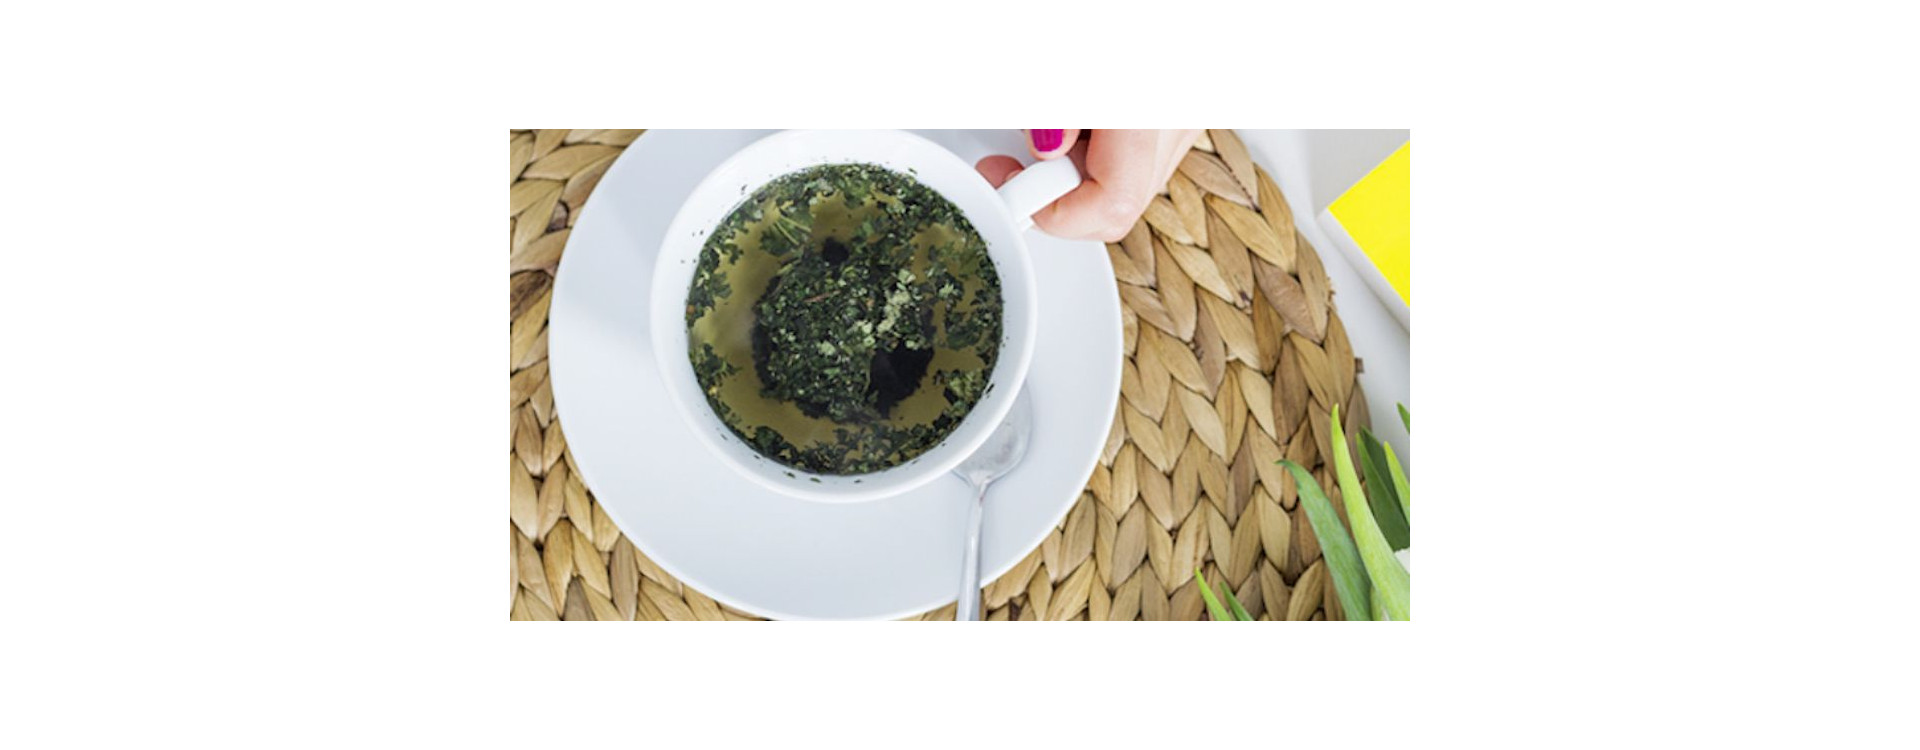 Ziołowe herbaty dla zdrowia i urody